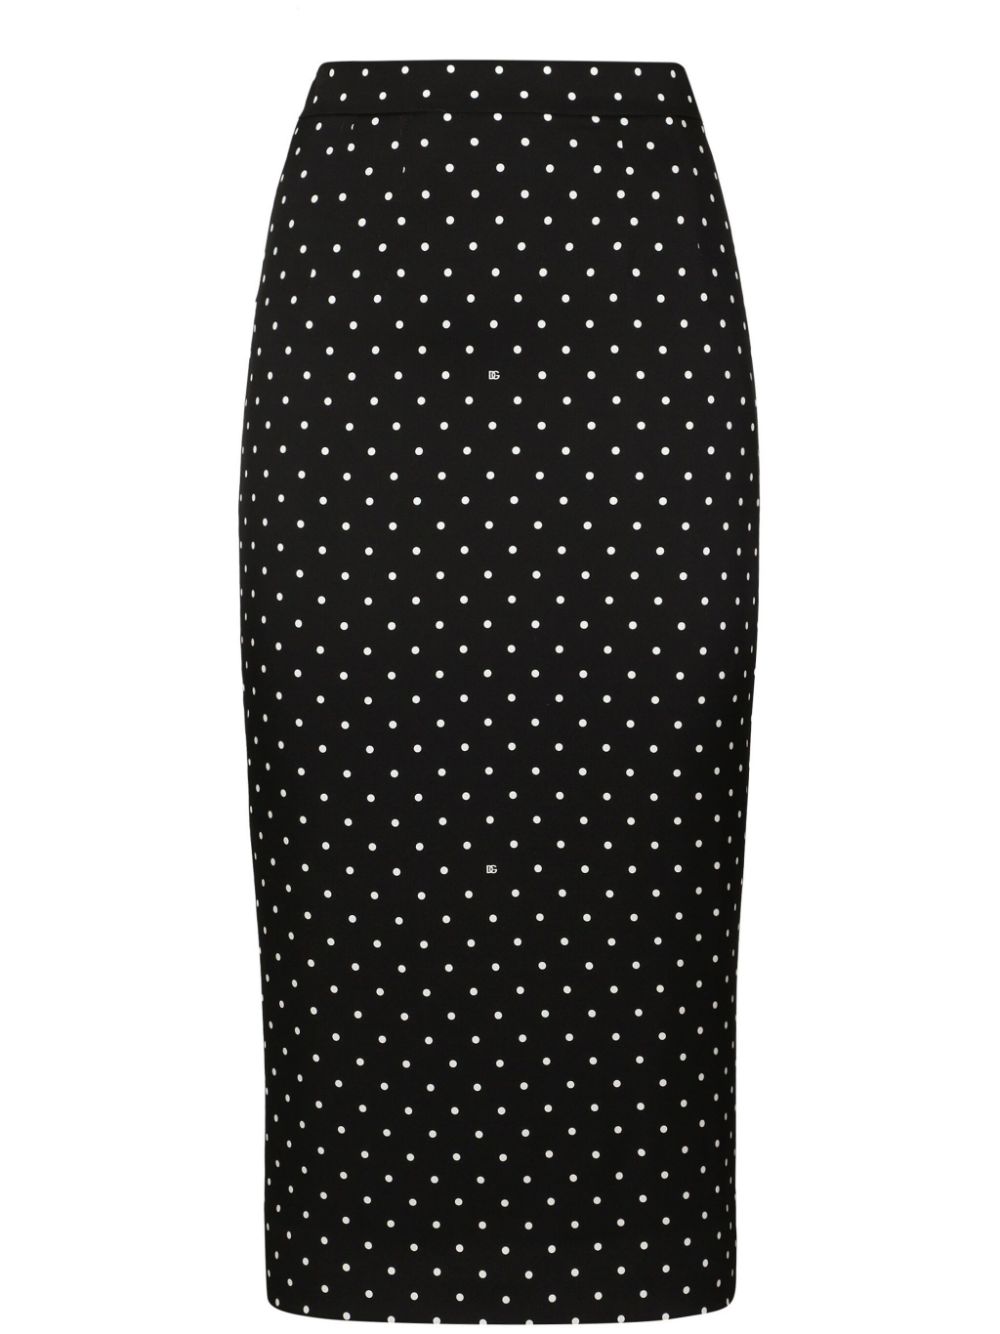 Dolce & Gabbana Polka-dot Pencil Skirt In Black